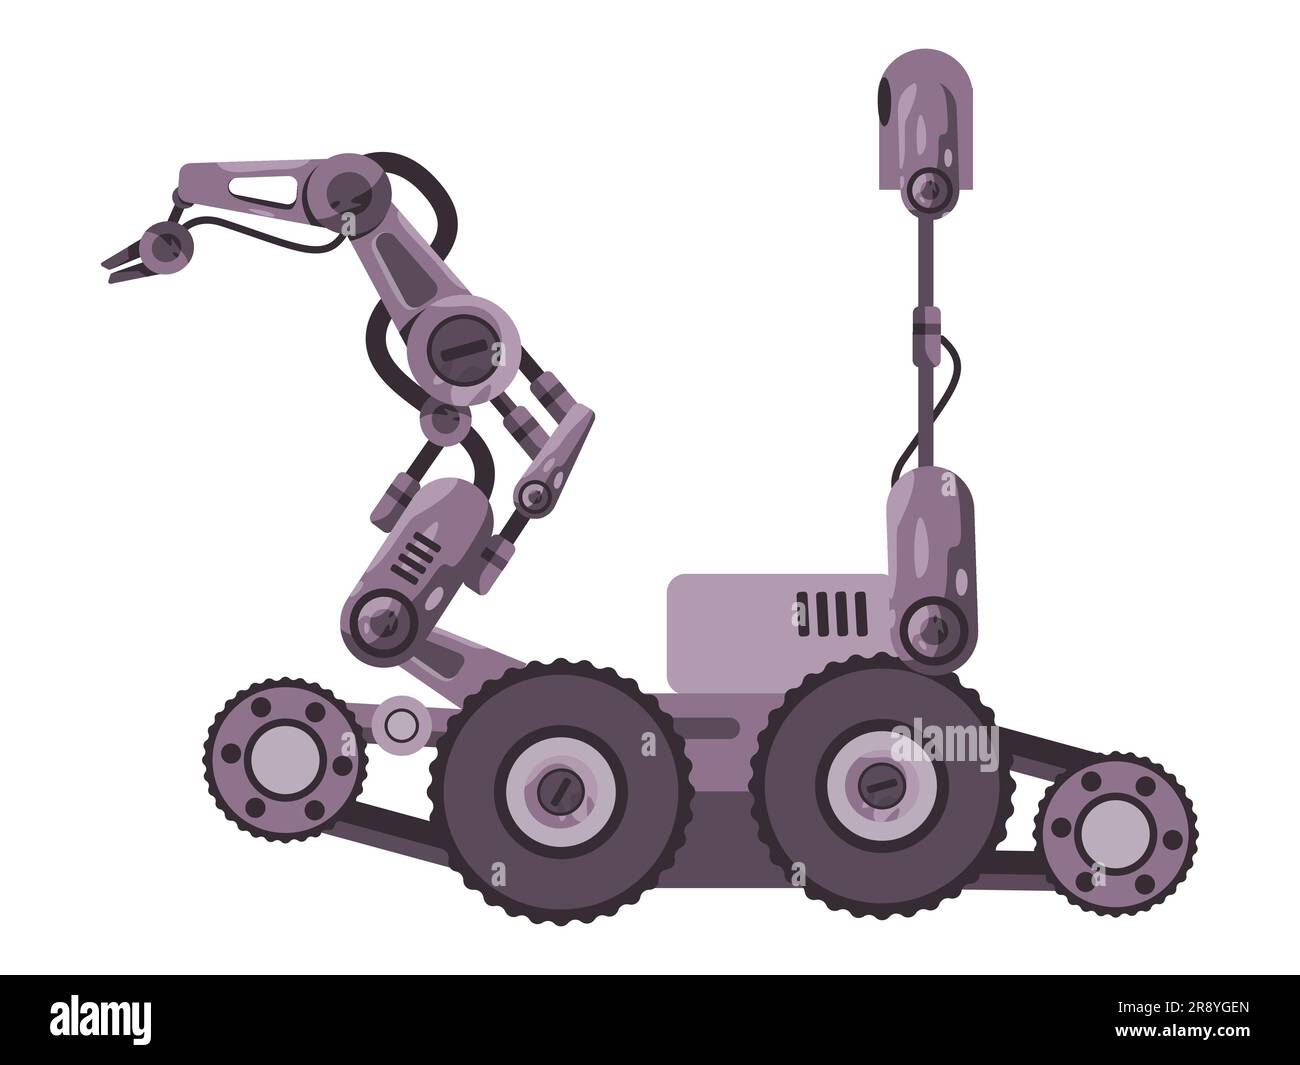 Veicolo per lo smaltimento di bombe robot mani robotiche braccio meccanico impugnatura antiterrorismo pericoloso trattamento di sicurezza Illustrazione Vettoriale